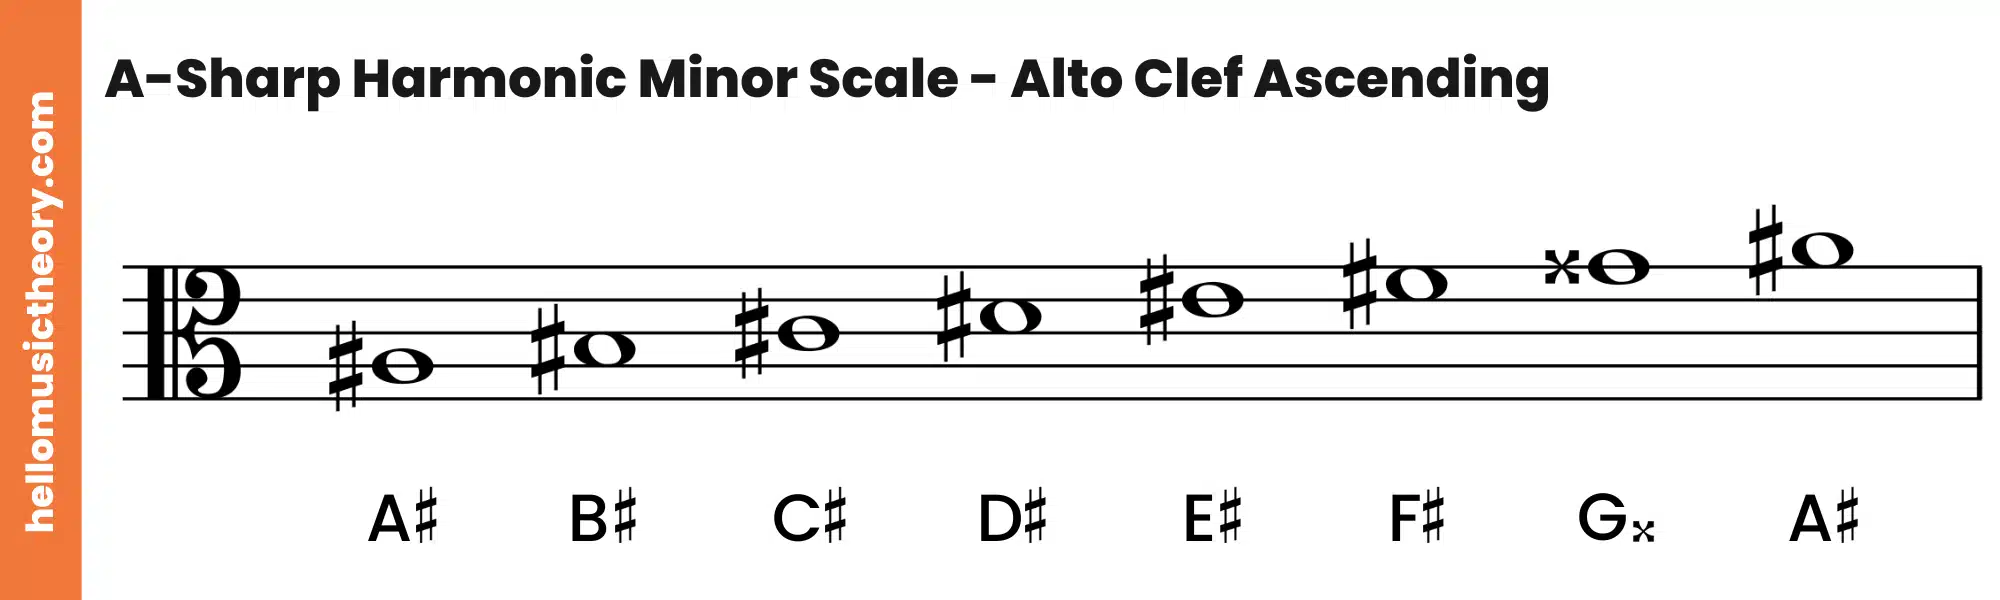 A-Sharp Harmonic Minor Scale Alto Clef Ascending